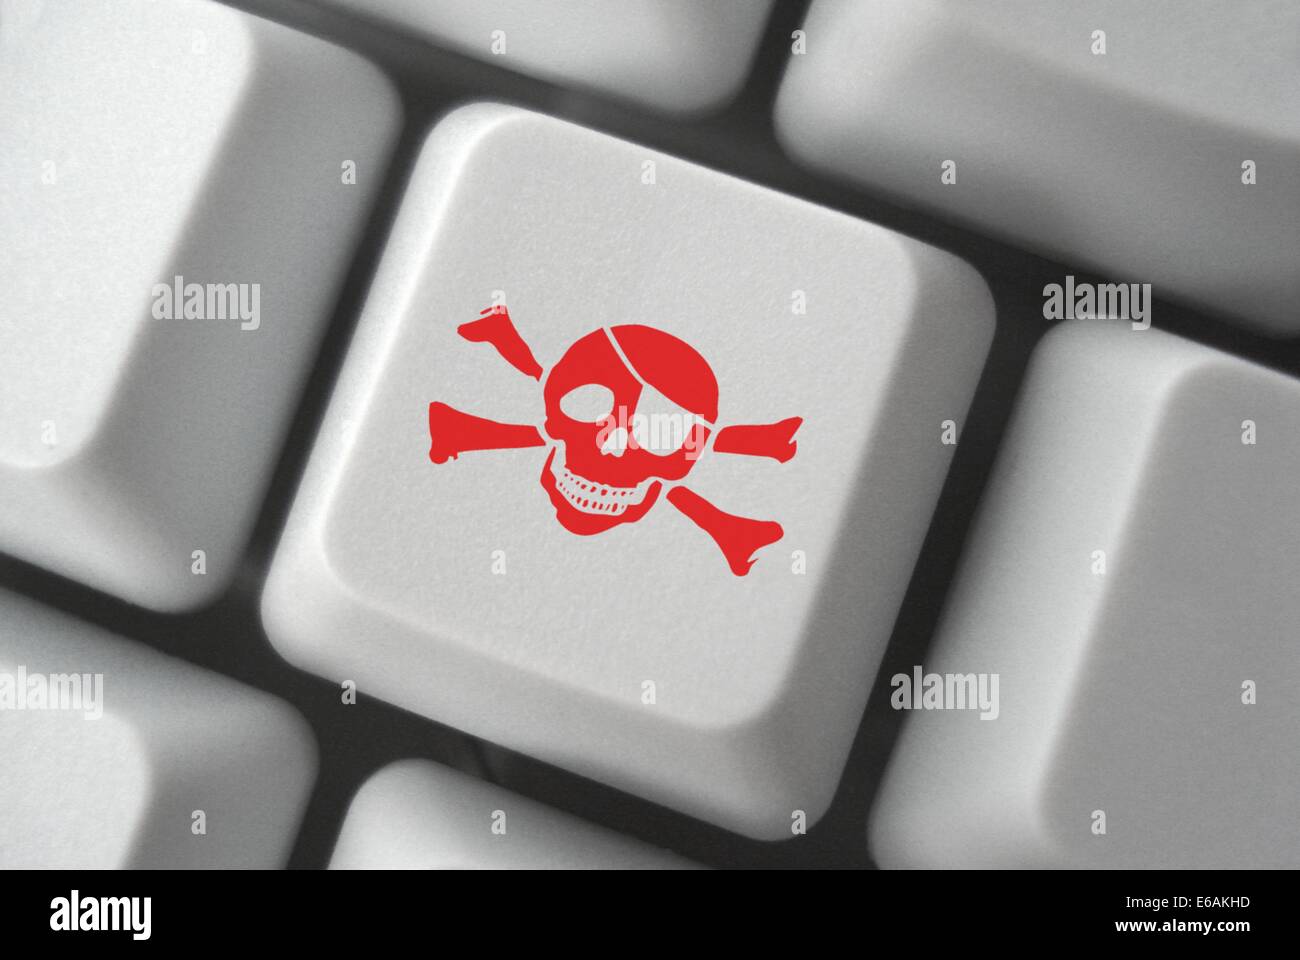 Copia pirata,la pirateria internet,Spionaggio online Foto Stock